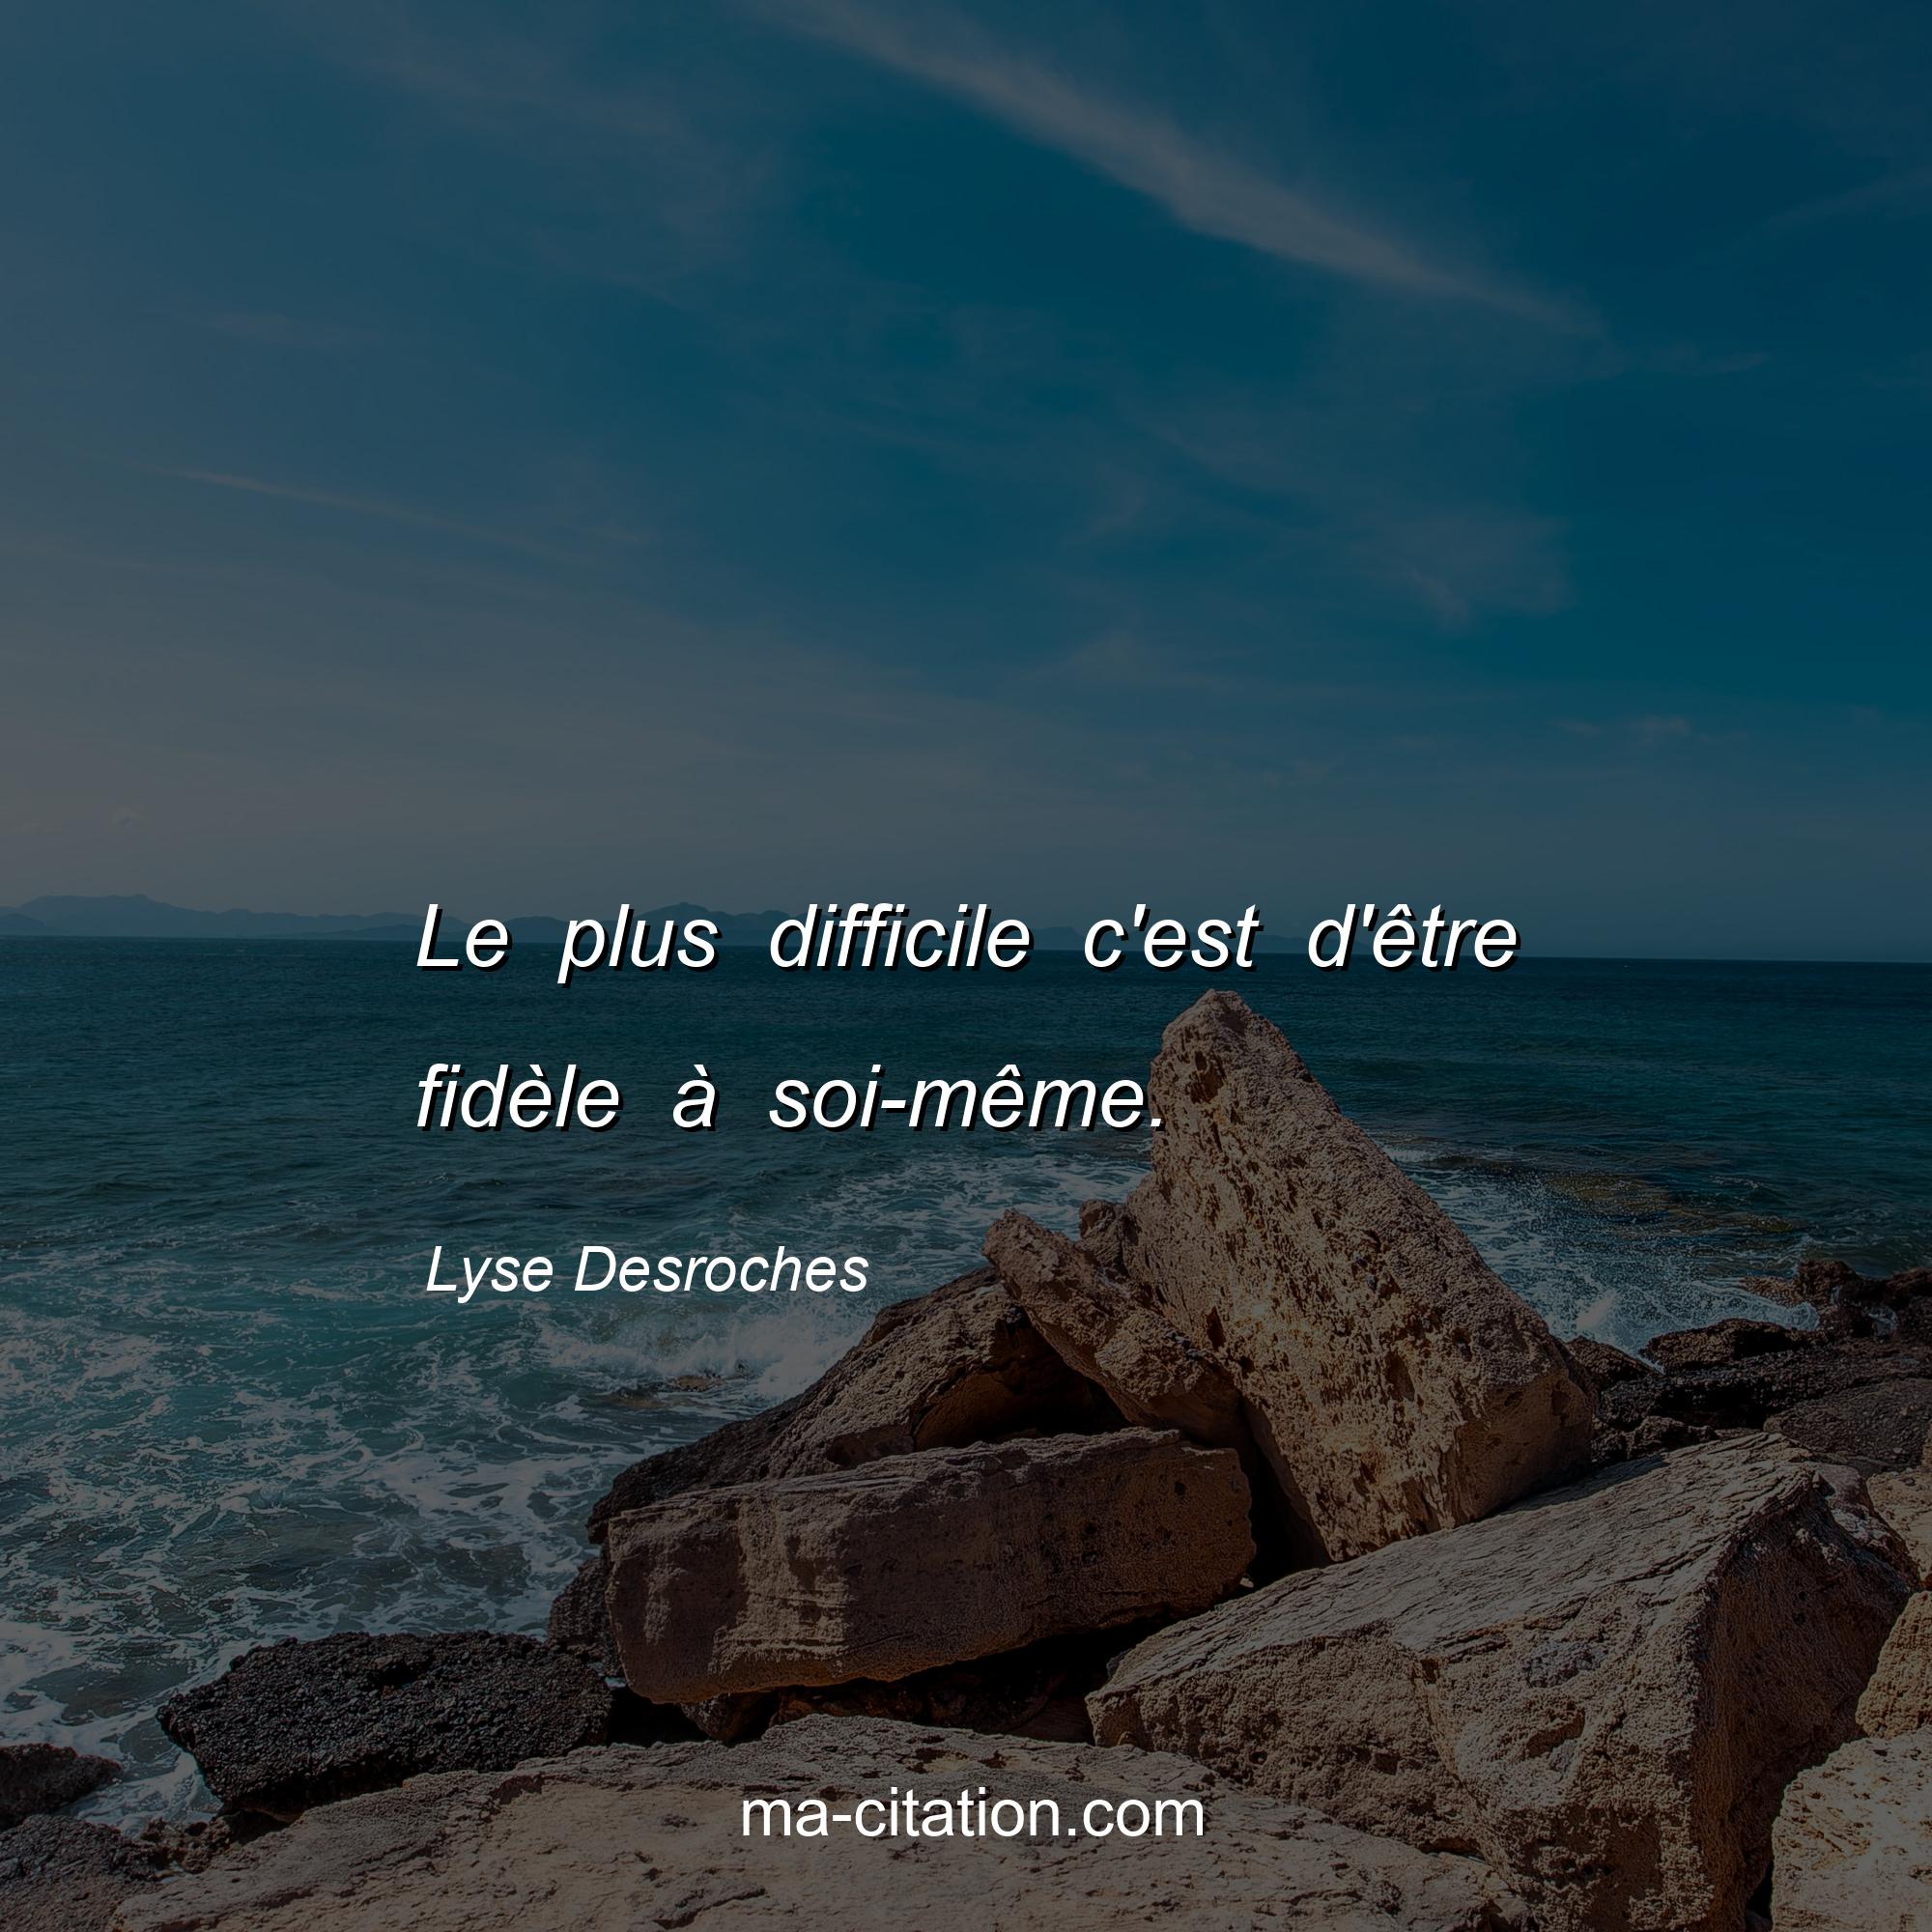 Lyse Desroches : Le plus difficile c'est d'être fidèle à soi-même.